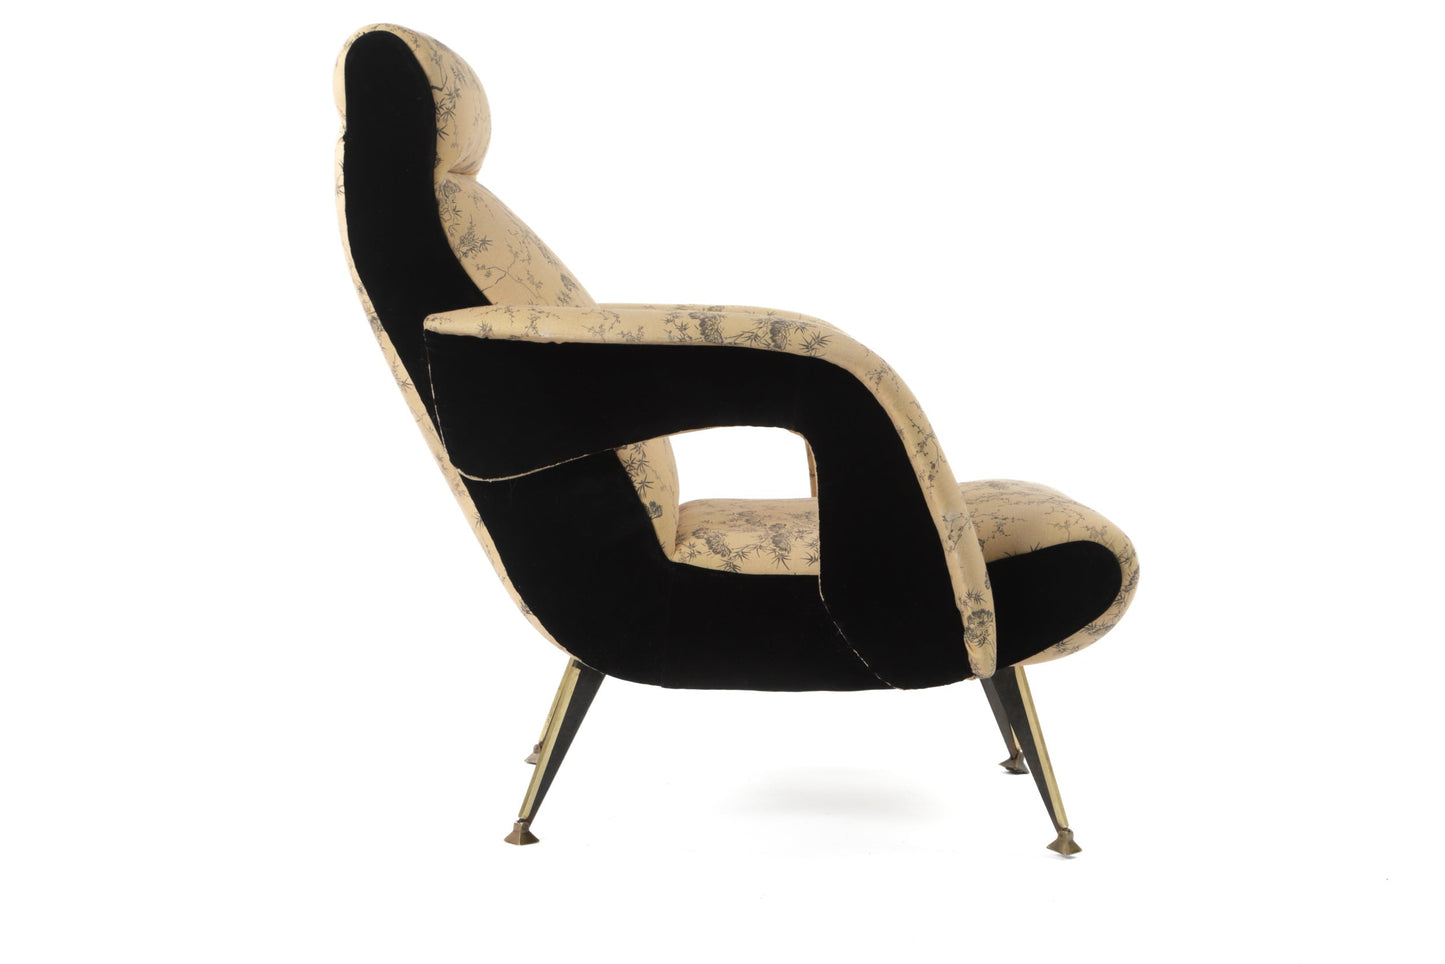 70s armchair reinterpreted by triplef